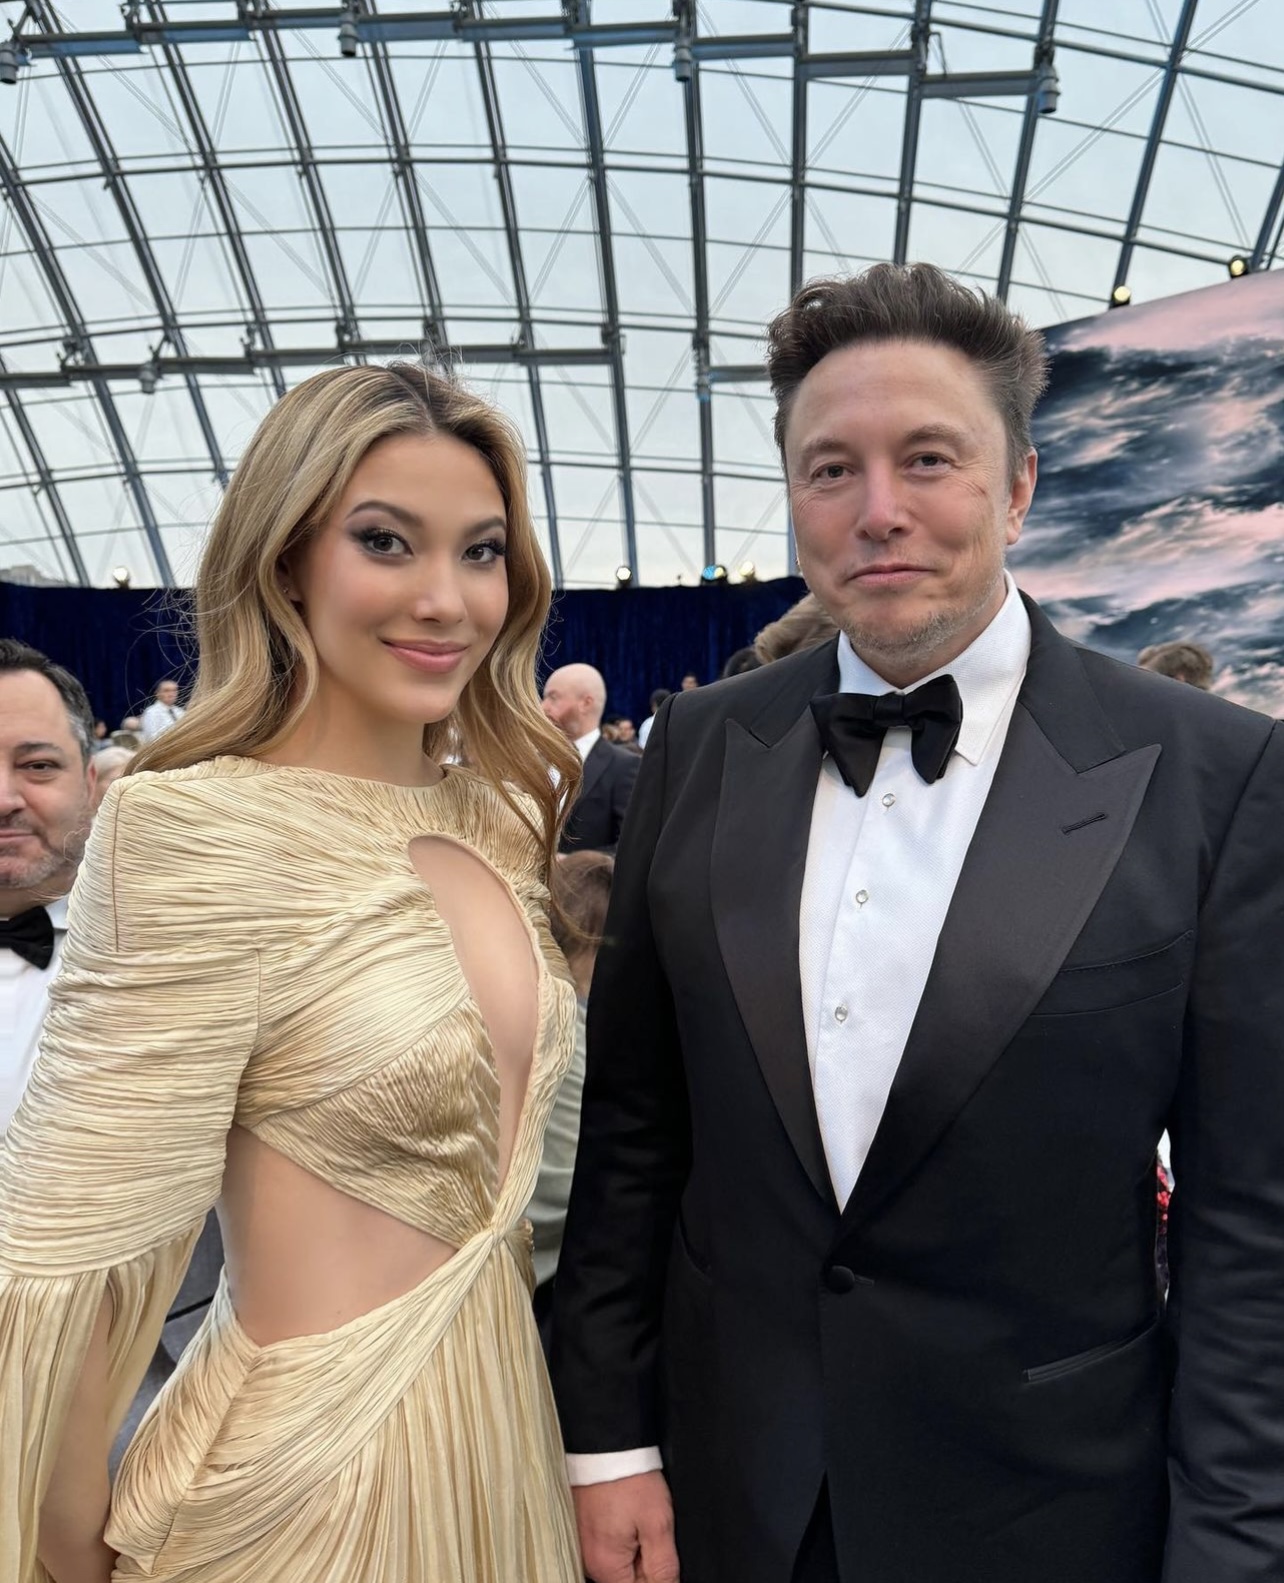 Tại sự kiện, nữ vận động viên nổi tiếng có dịp hội ngộ với tỷ phú công nghệ Elon Musk, tạo nên nhiều đề tài thú vị cho báo giới khai thác.